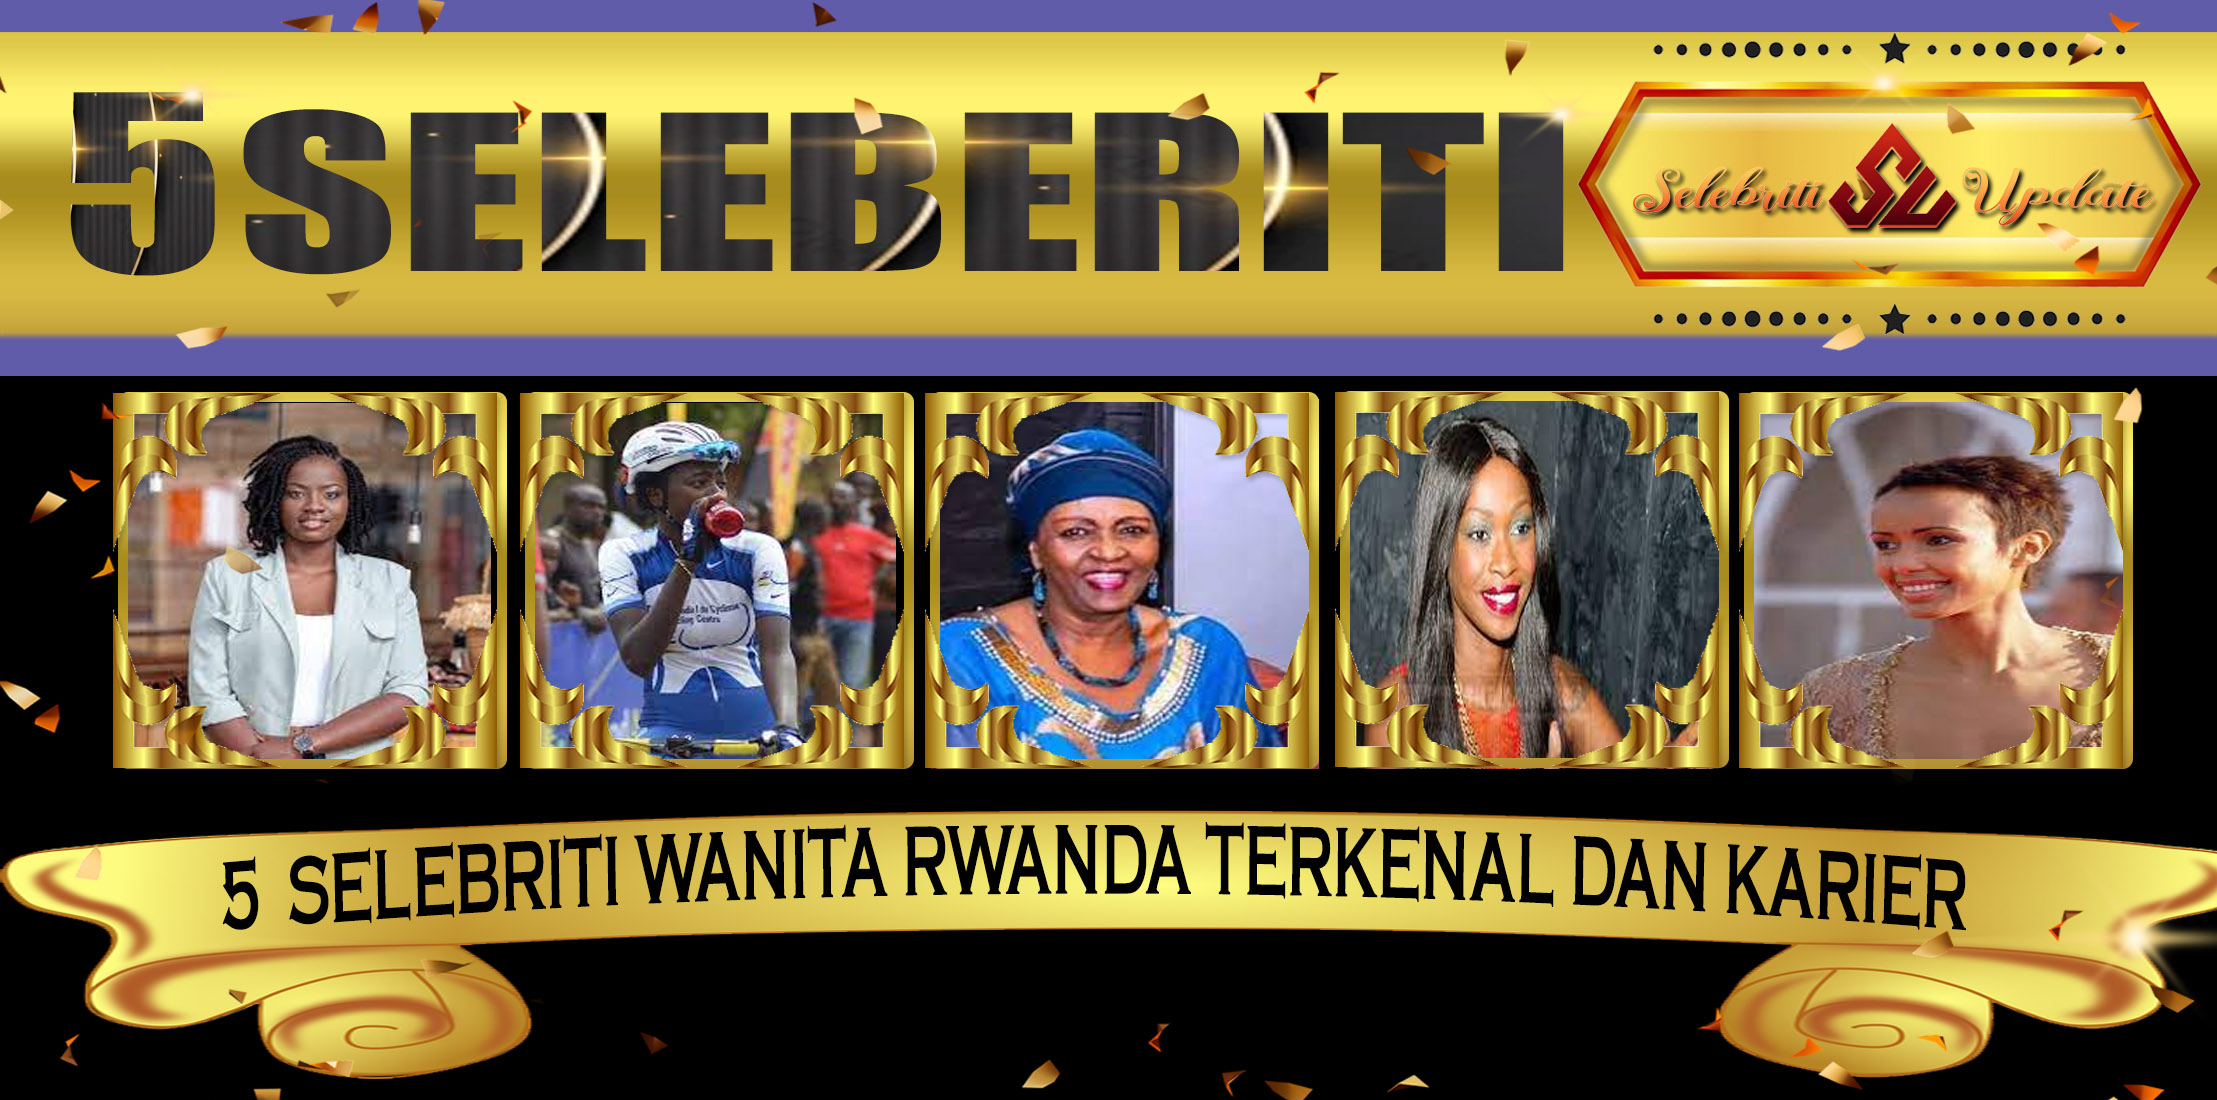 5 Selebriti Wanita Rwanda Terkenal Dan Karier